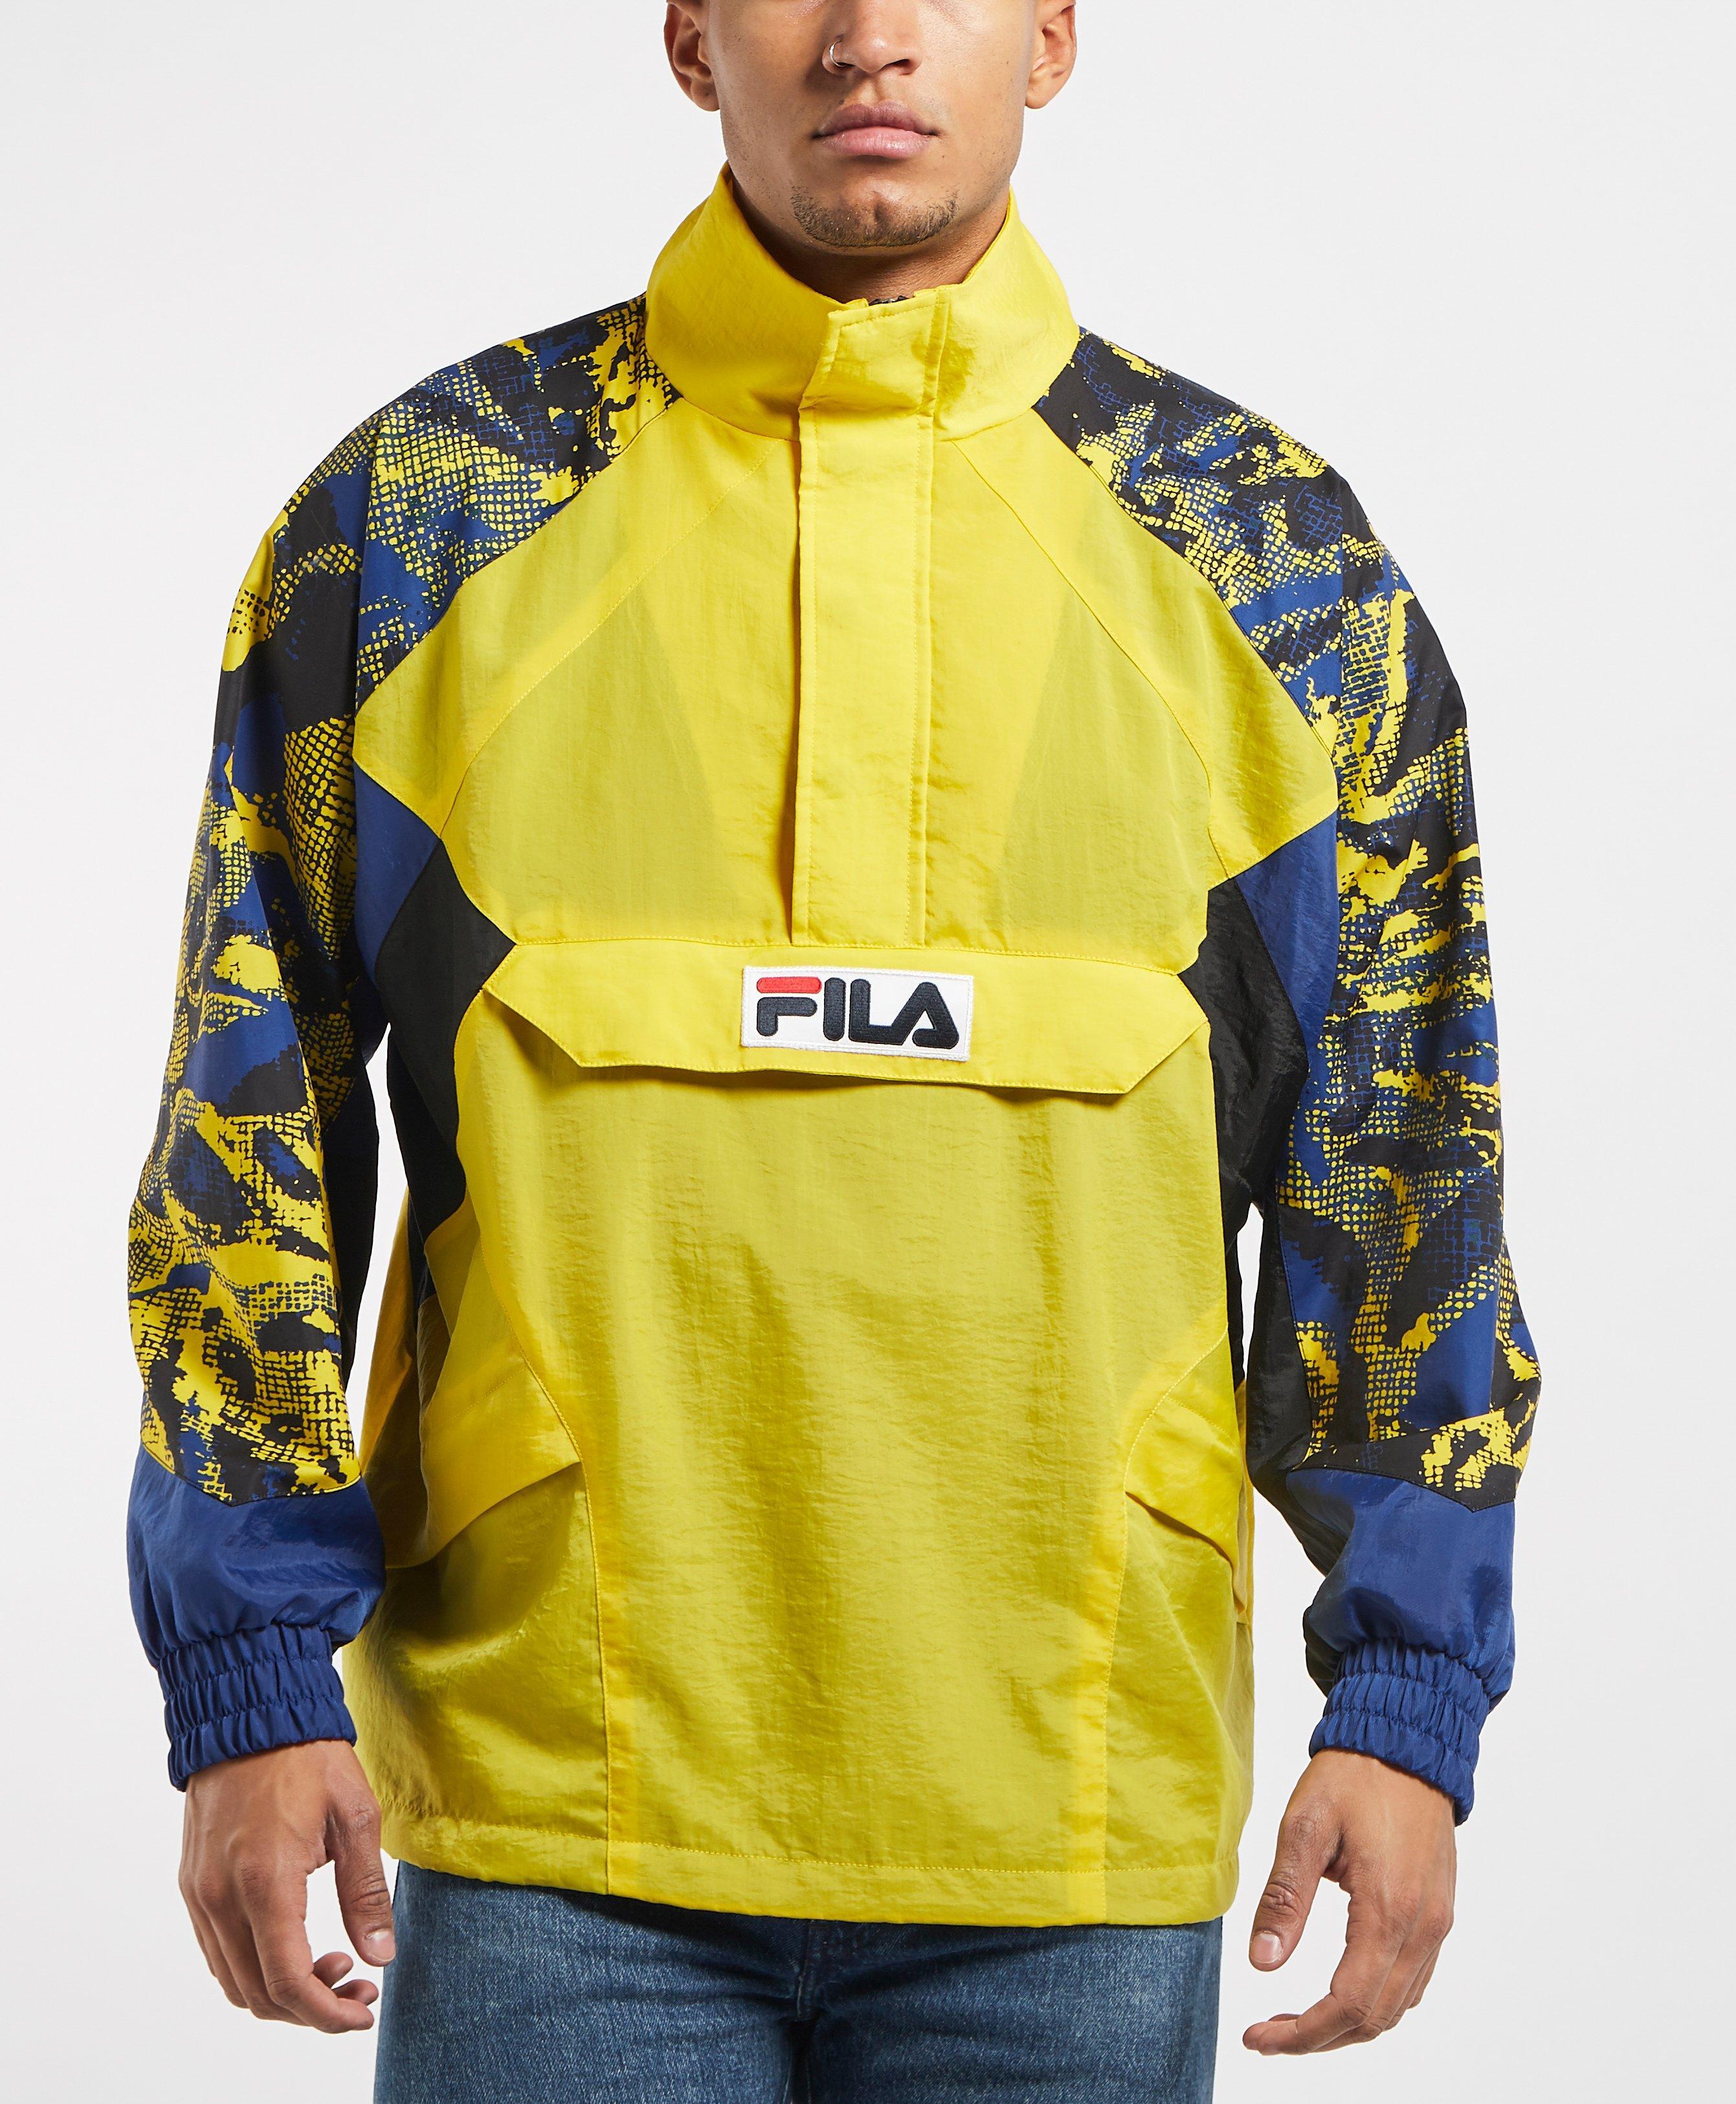 Fila Synthetic Kronplatz Pullover Jacket in Yellow for Men - Lyst